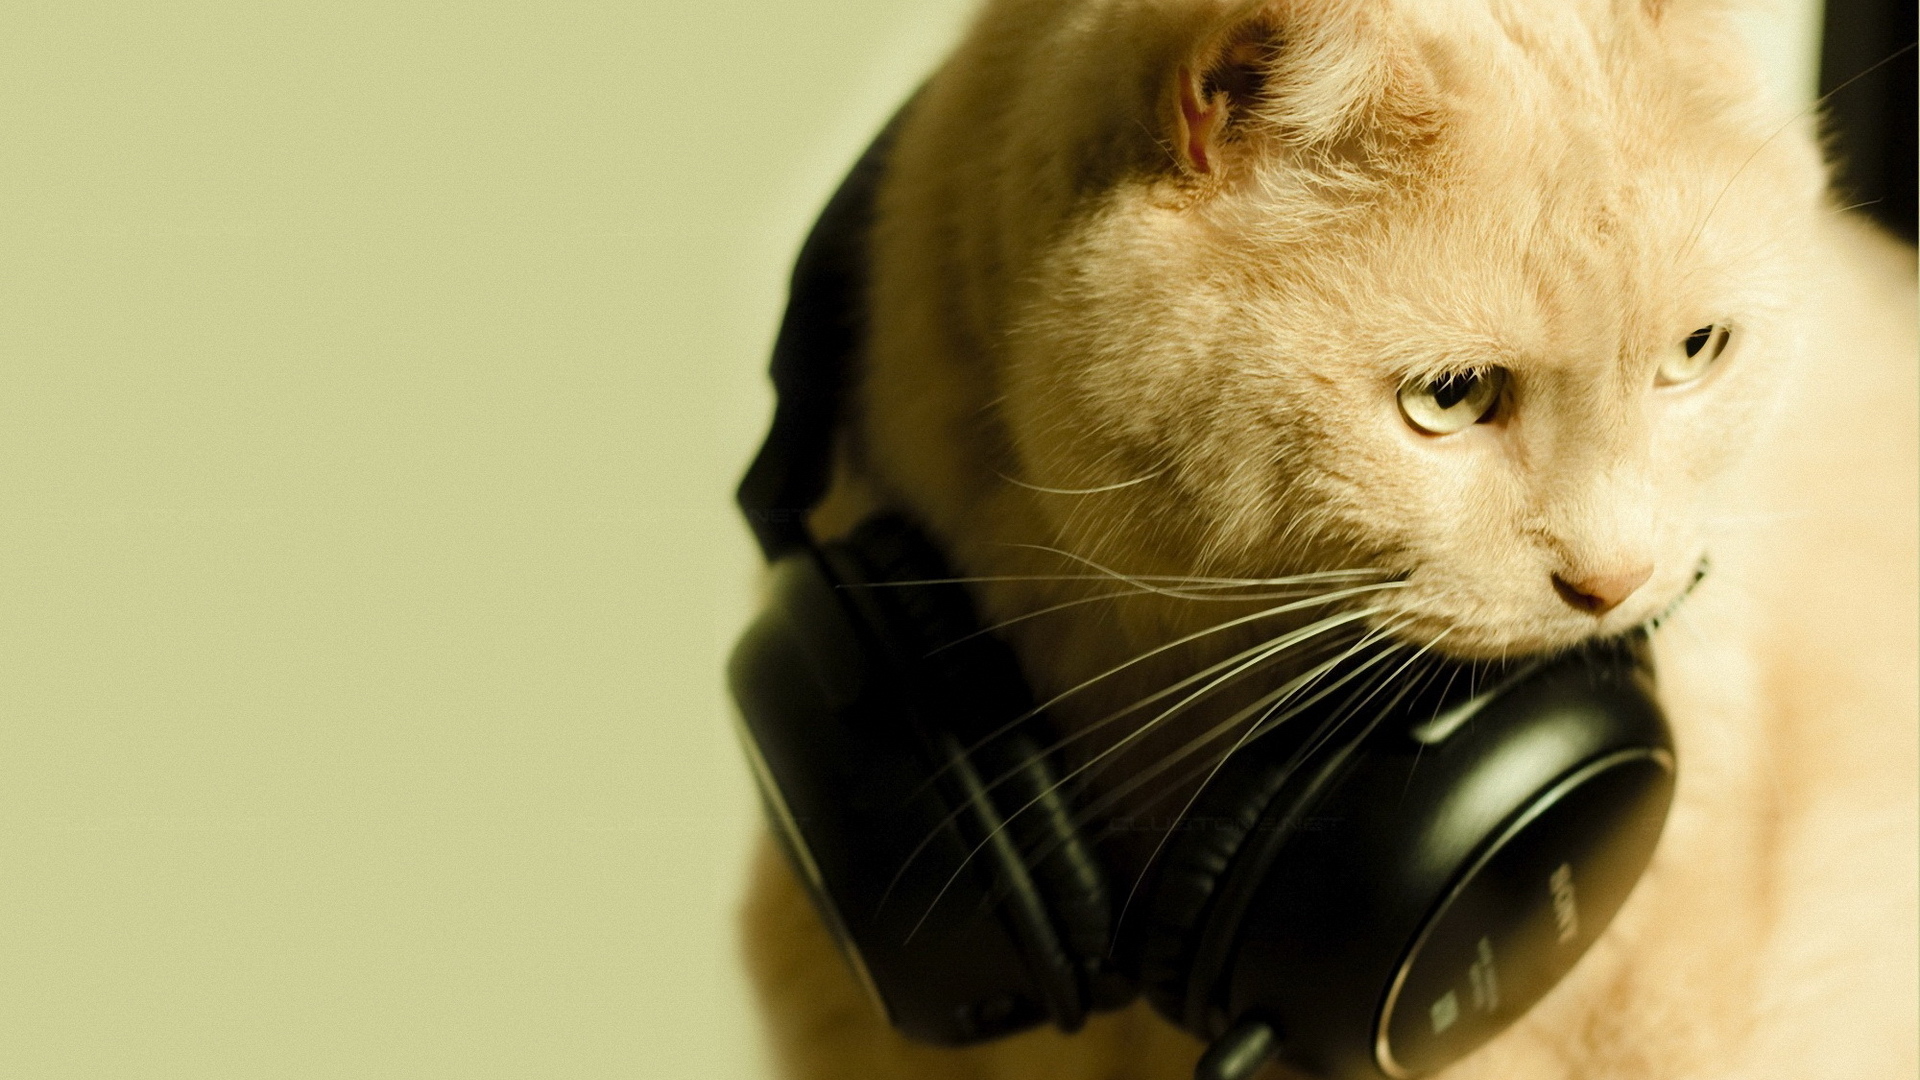 Скачать обои бесплатно Животные, Музыка, Кошки (Коты Котики) картинка на рабочий стол ПК